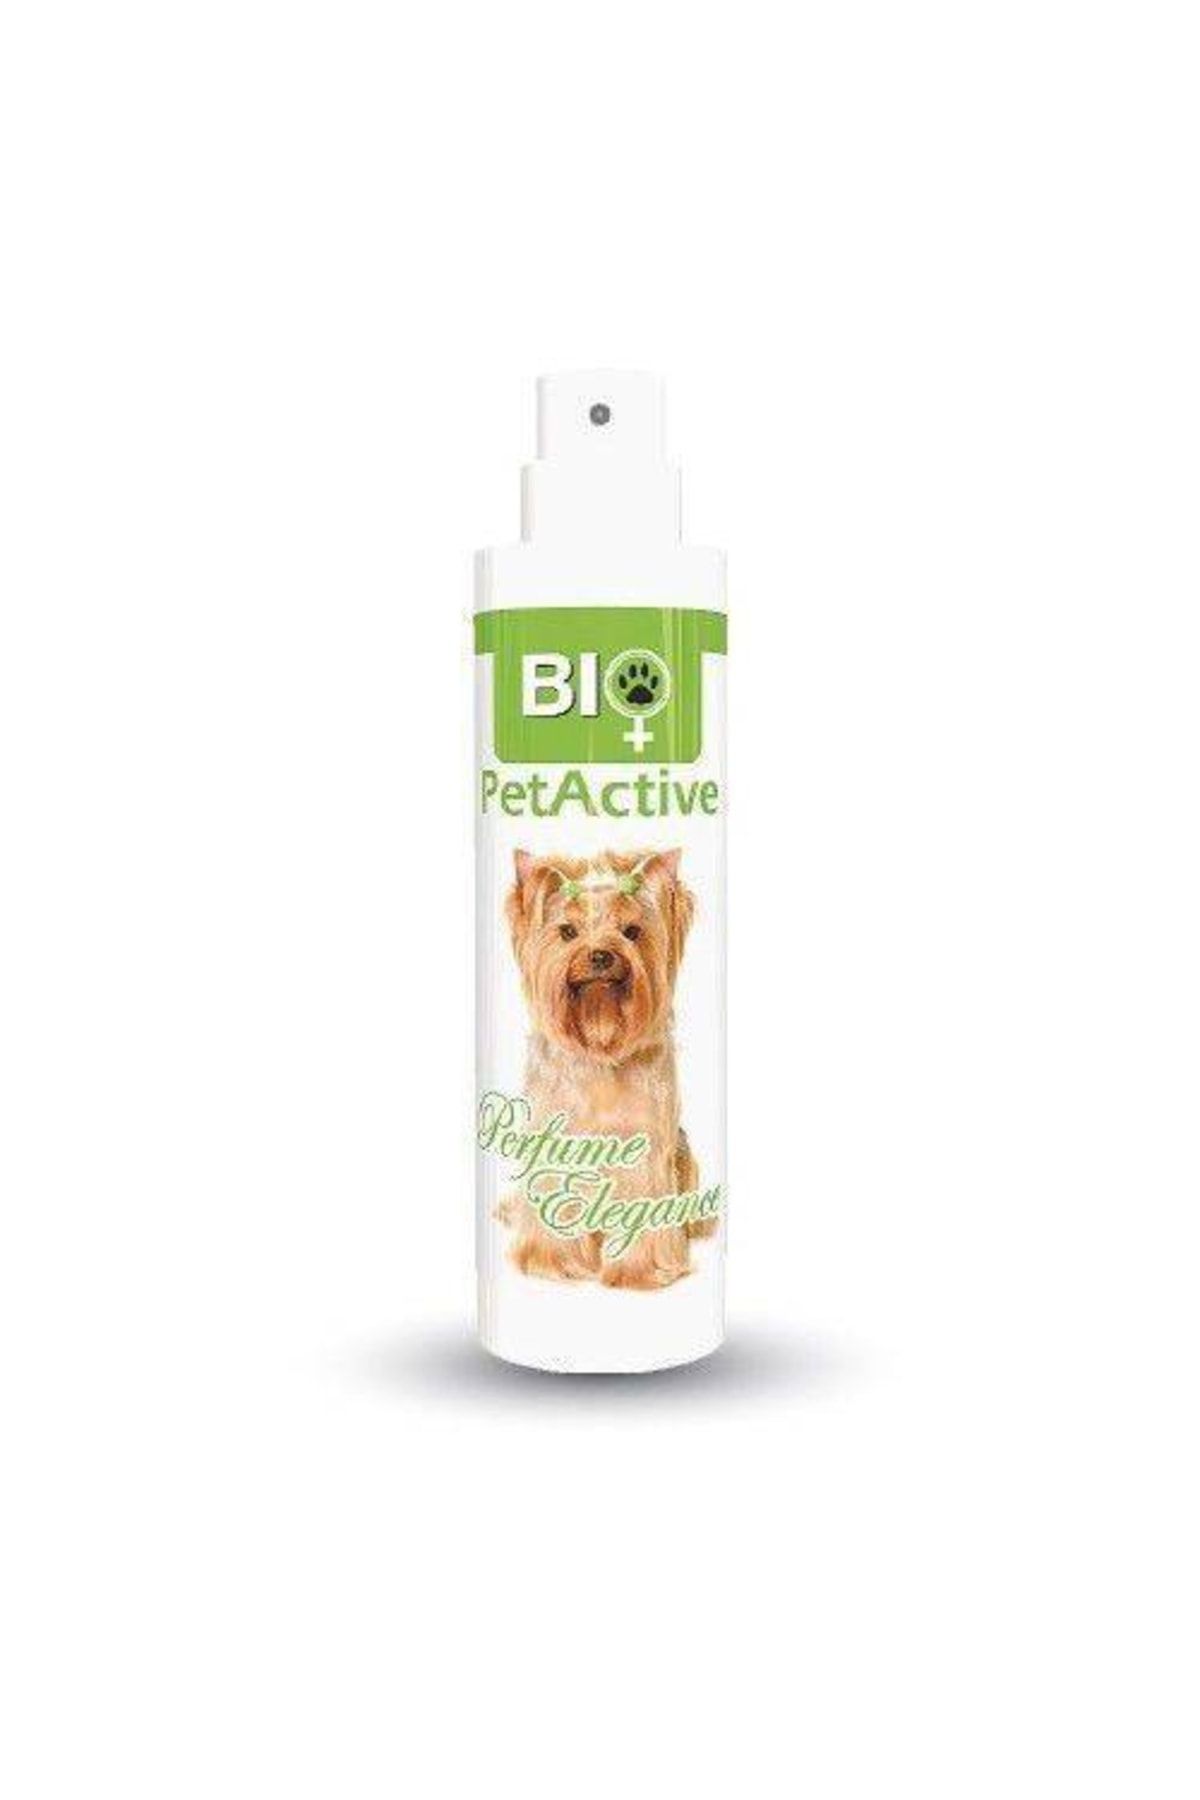 Bio PetActive Bio Pet Active Elegance Köpek Parfümü Nergis Çiçeği Kokulu 50ml